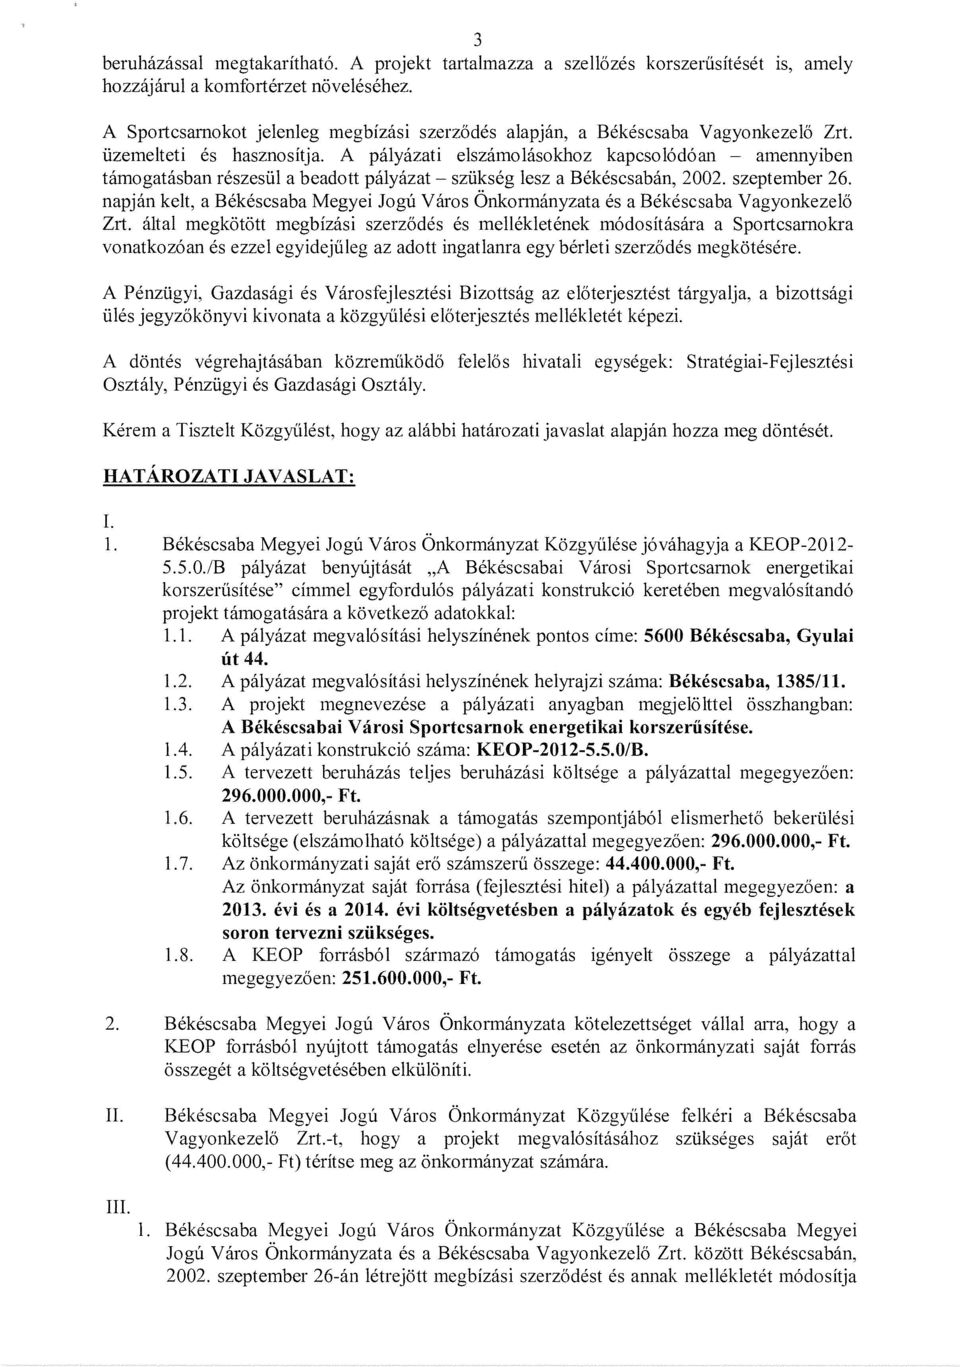 A palyazati elszamolasokhoz kapcso16d6an - amennyiben tamogatasban reszesiil a beadott palyazat - sziikseg lesz a Bekescsaban, 2002. szeptember 26.